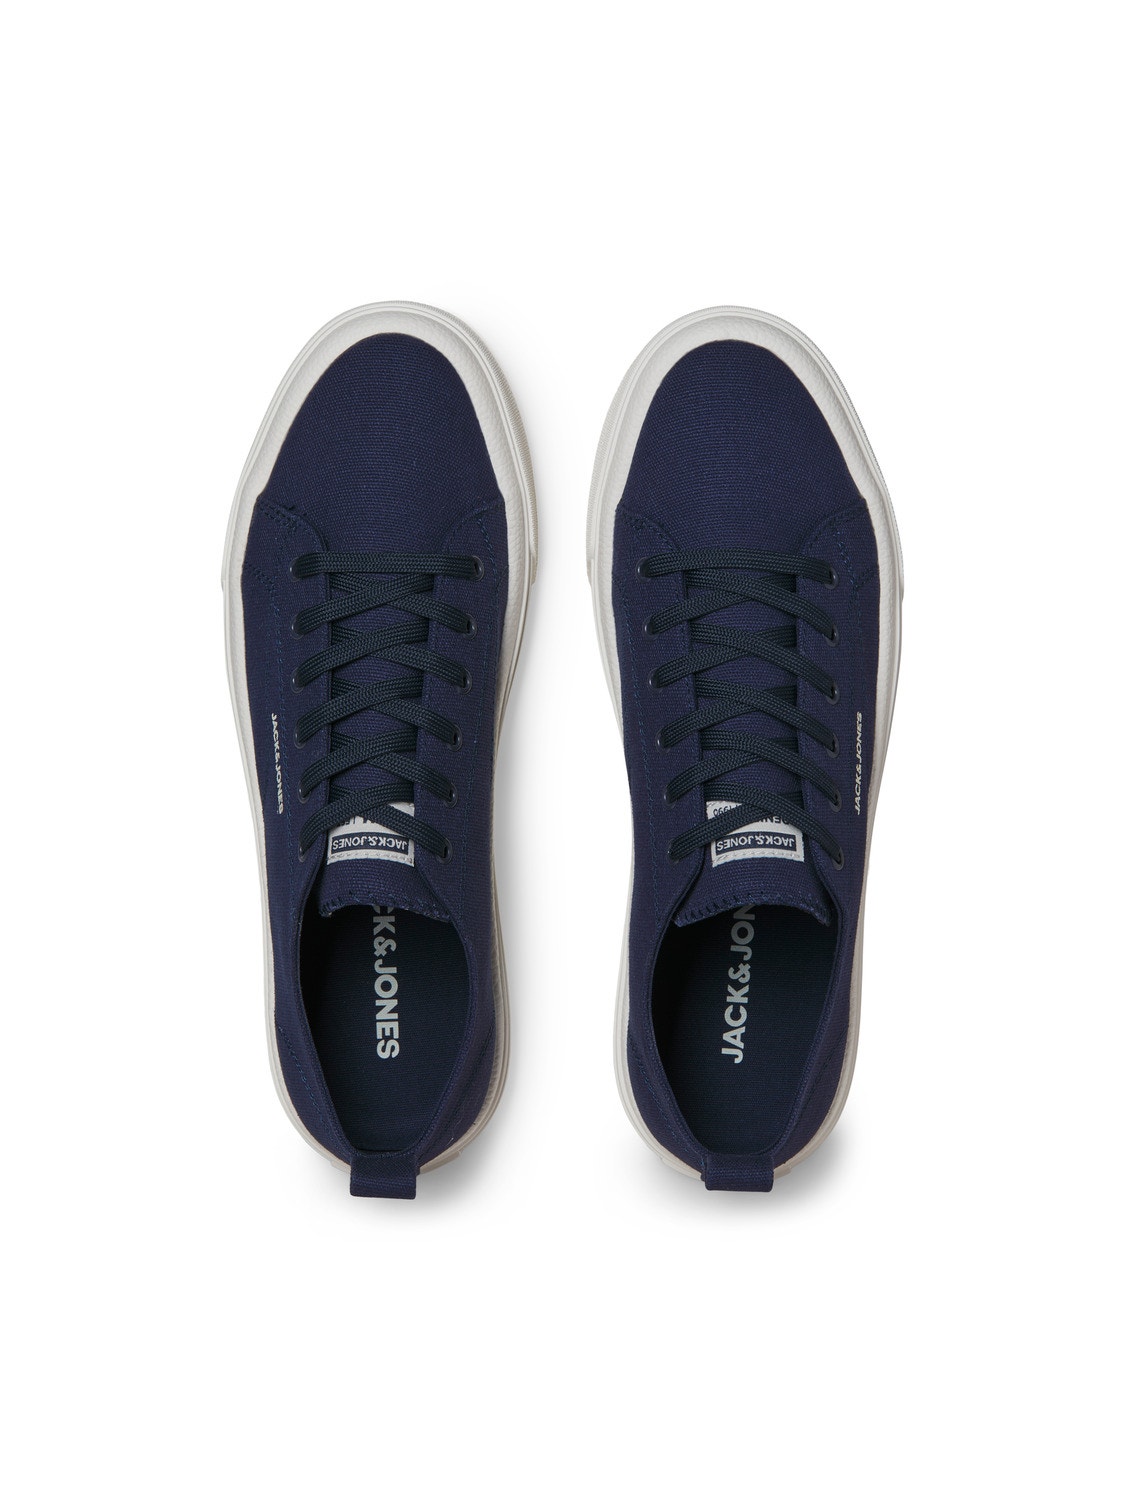 Jack & Jones Sneaker -Navy Blazer - 12257195